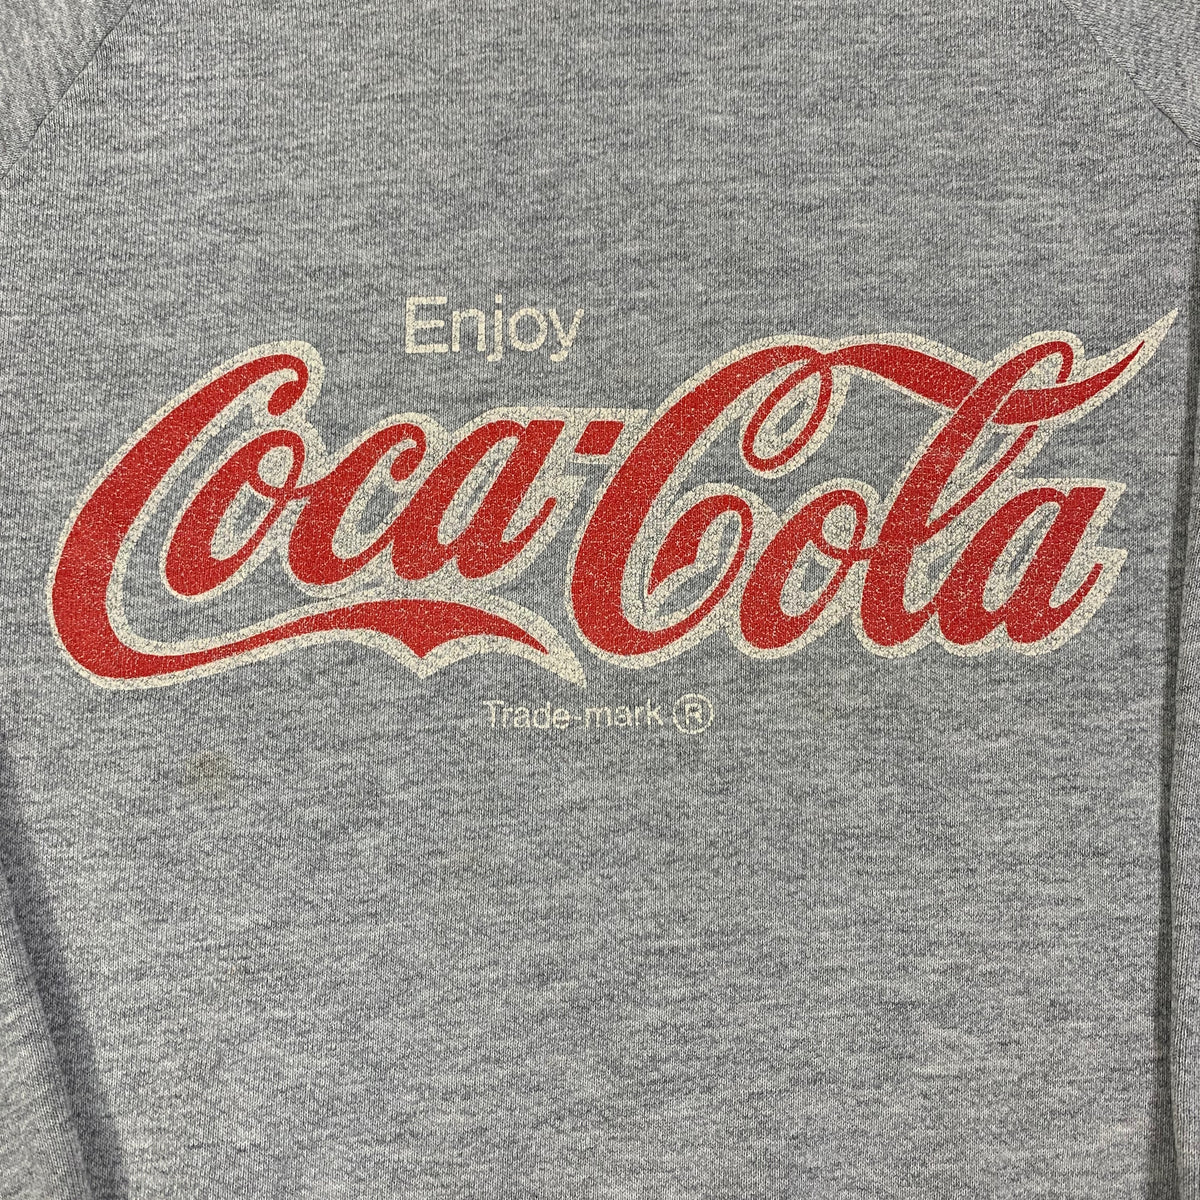 Vintage Coca-Cola &quot;Enjoy&quot; Crewneck Sweatshirt - jointcustodydc